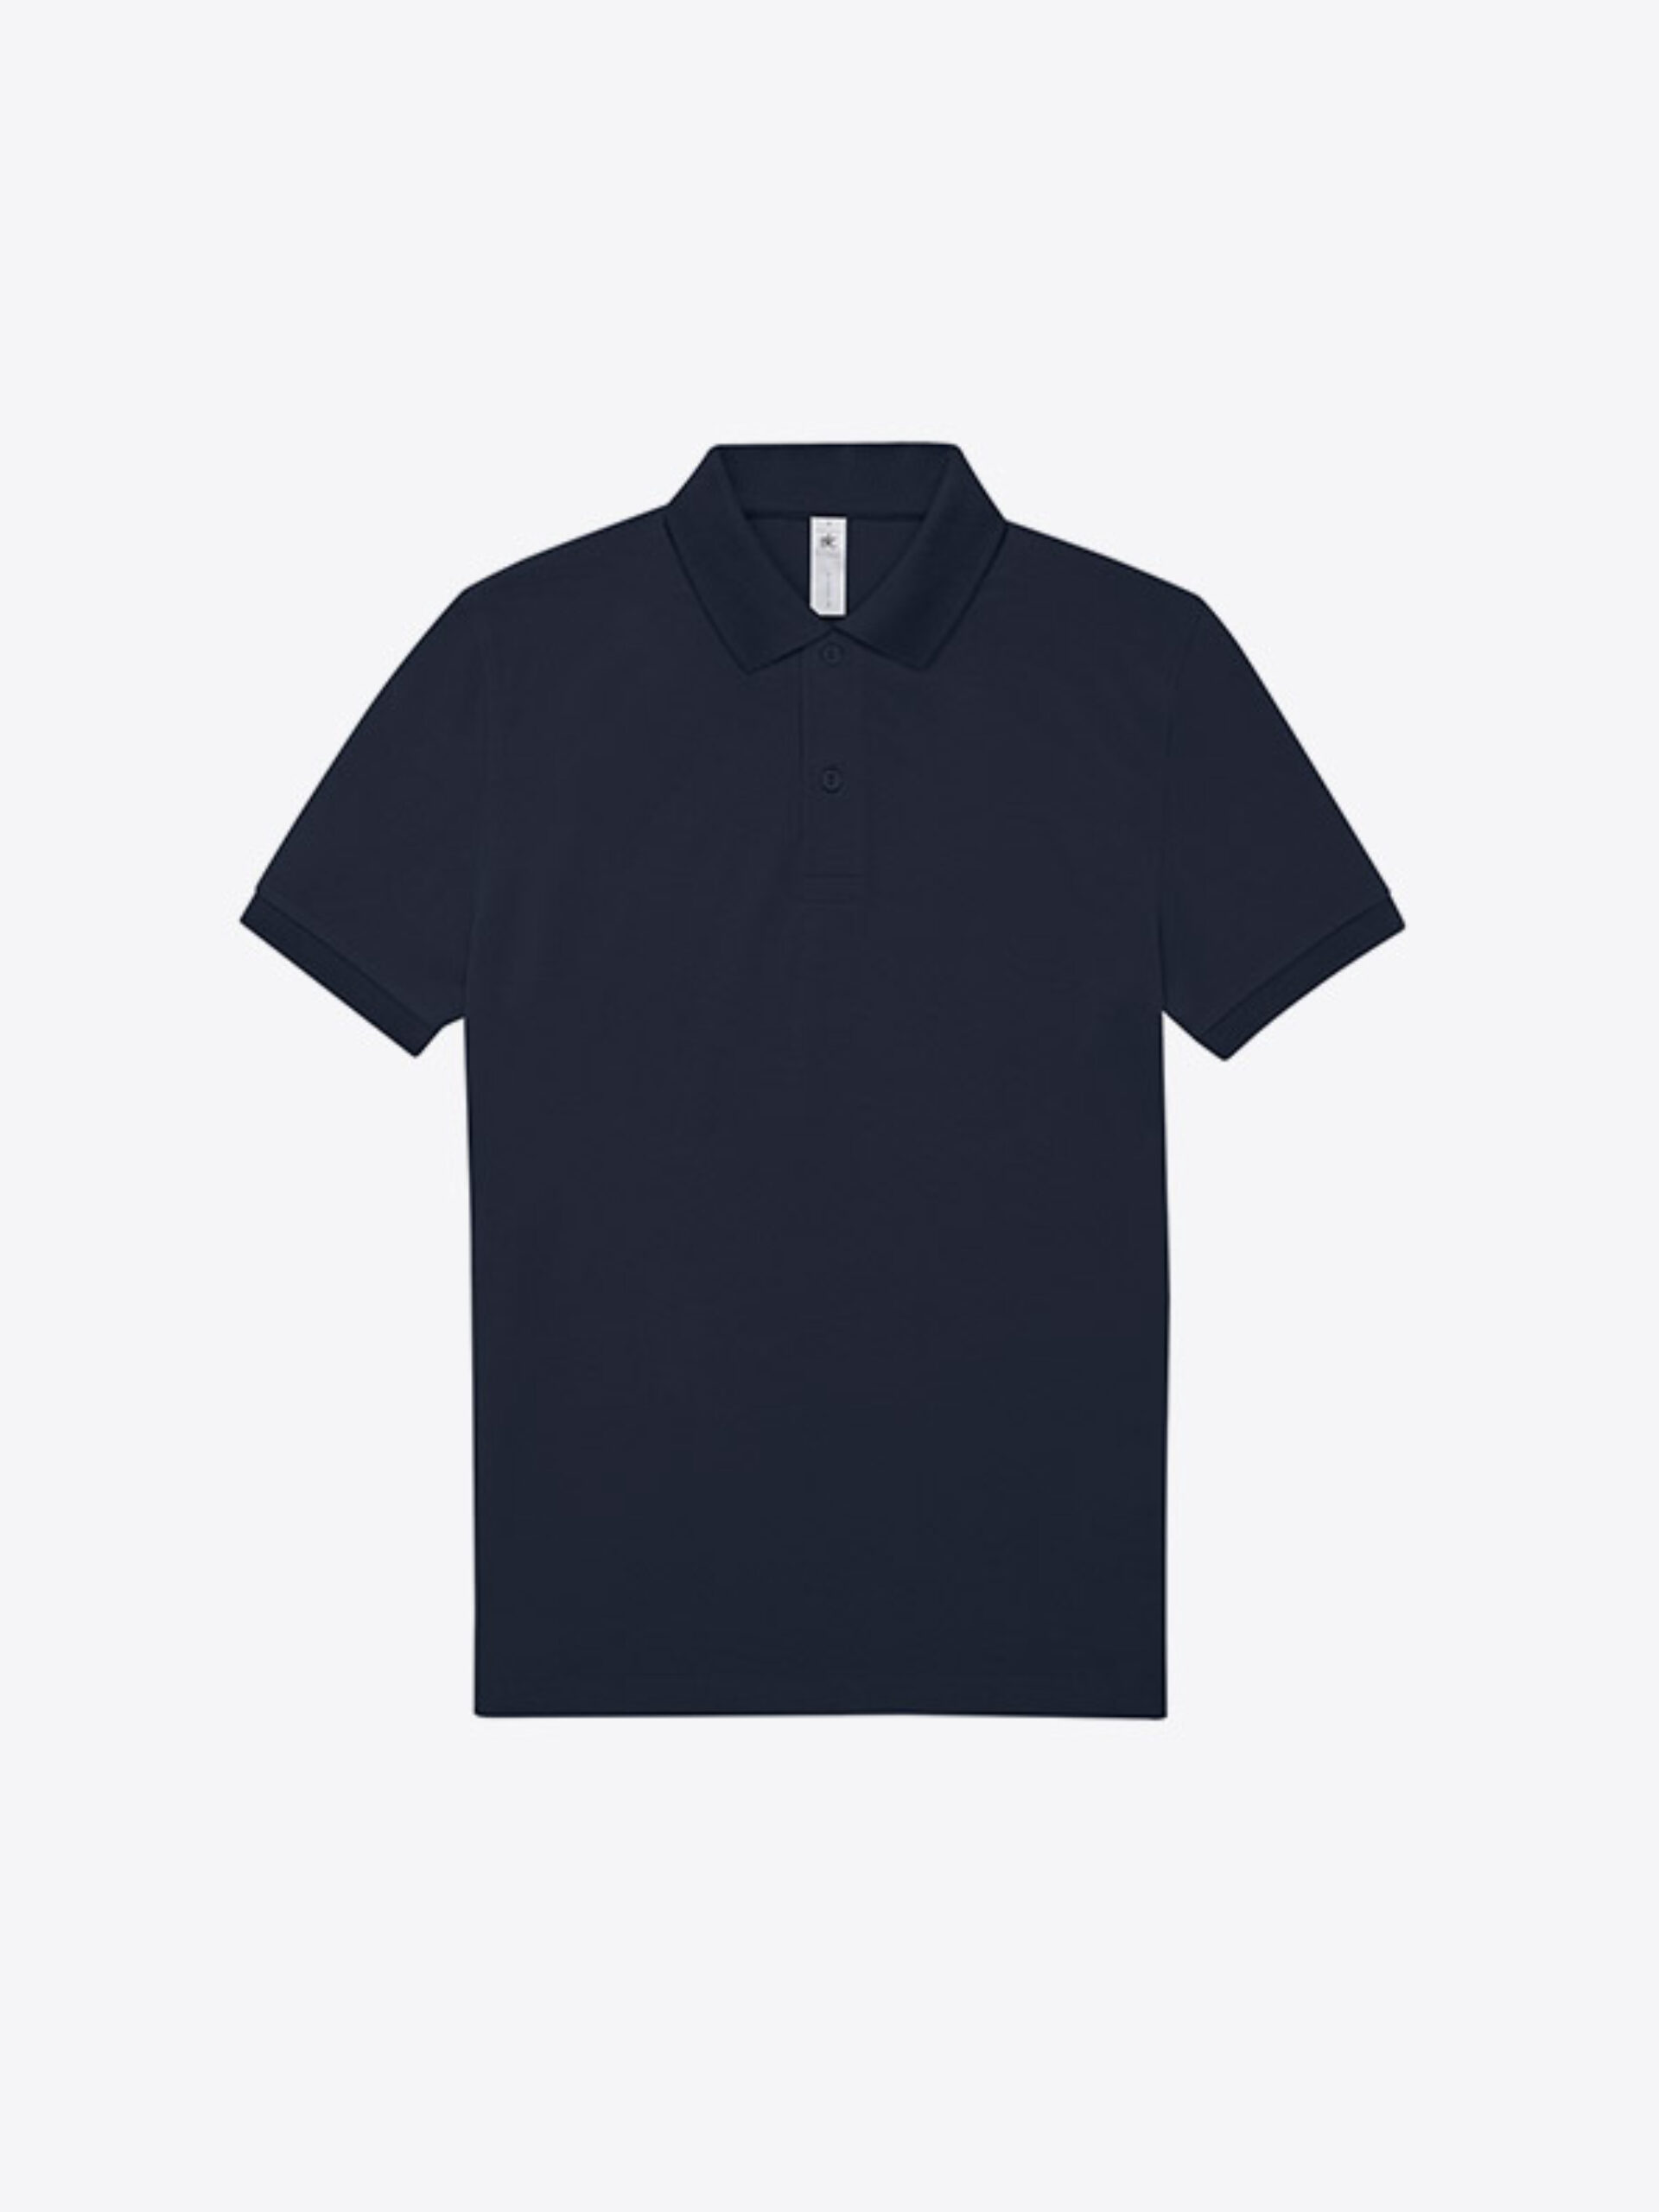 Polo Shirt Herren Easy B+c Mit Logo Bedrucken Baumwolle Navy